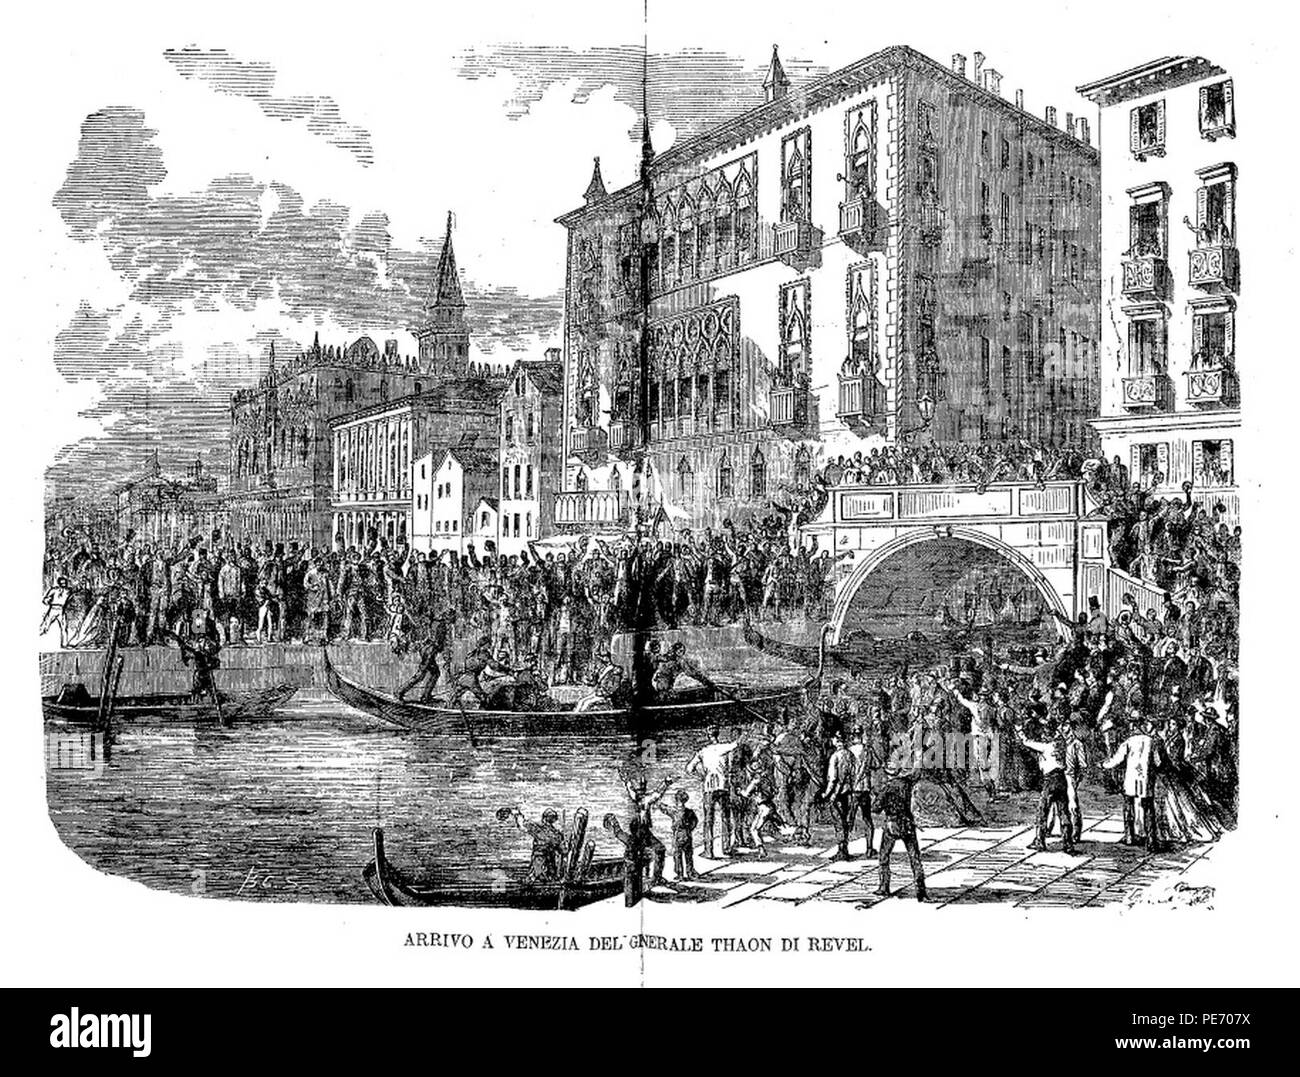 Arrivo a Venezia del generale Thaon di Revel (Emporio pittoresco, 1866). Stock Photo